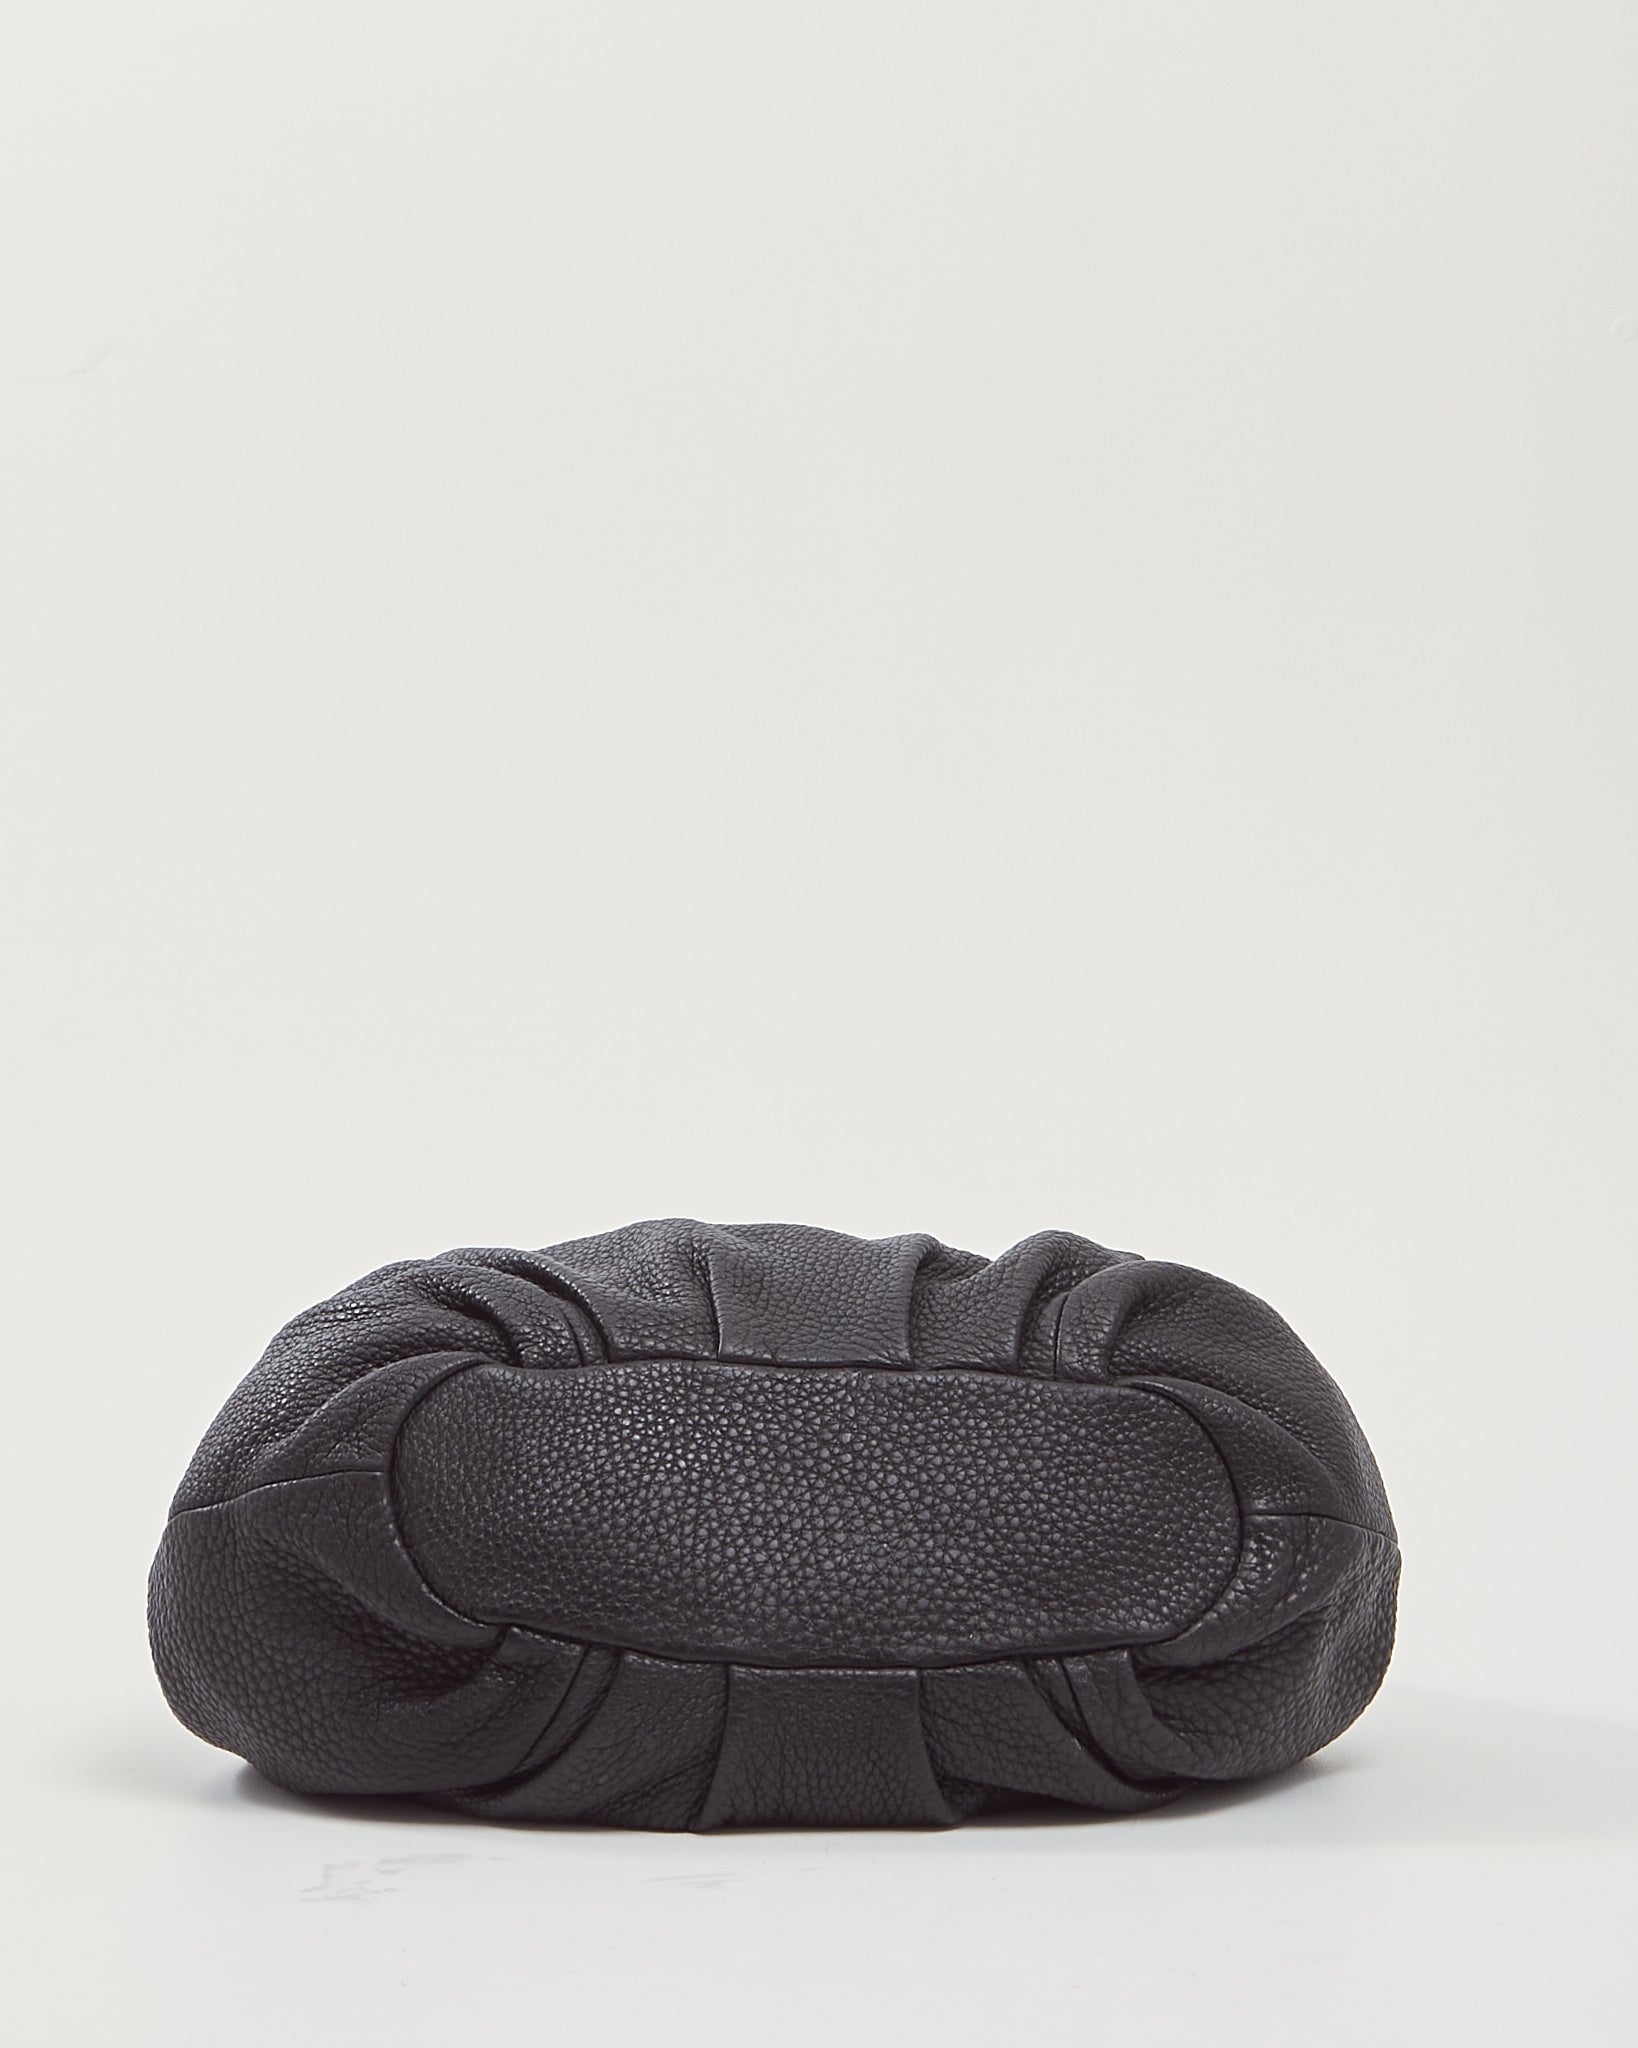 Fendi Black Selleria Top Stitch Grained Leather Tote Bag